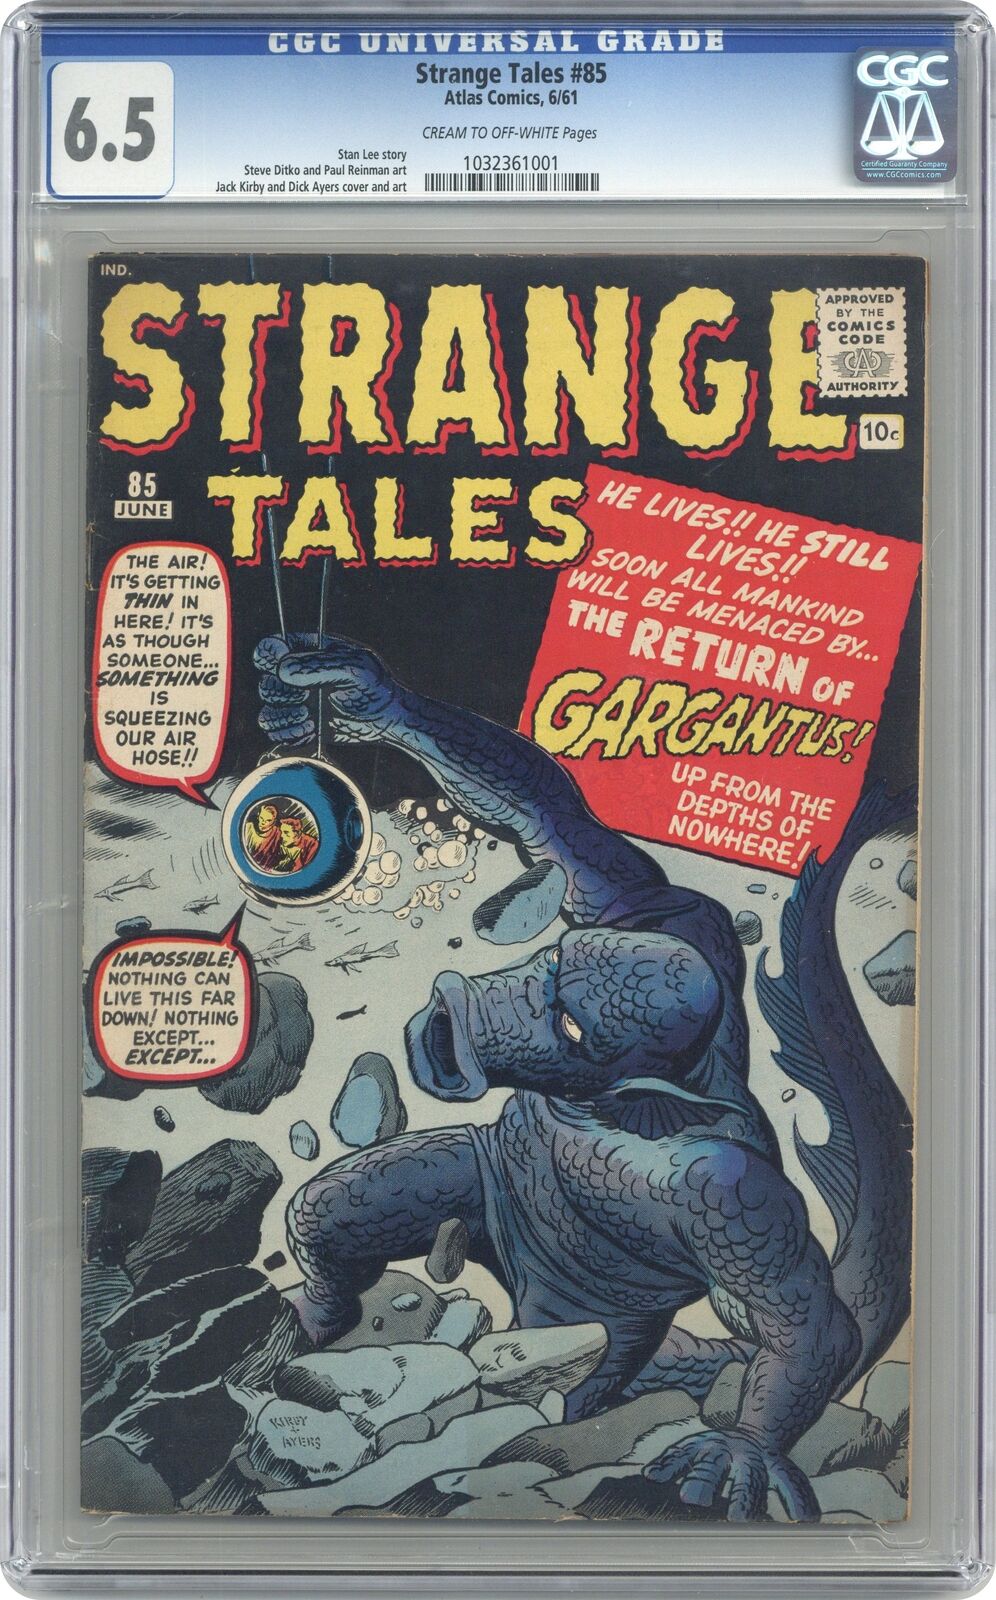 Strange Tales #85 CGC 6.5 1961 1032361001